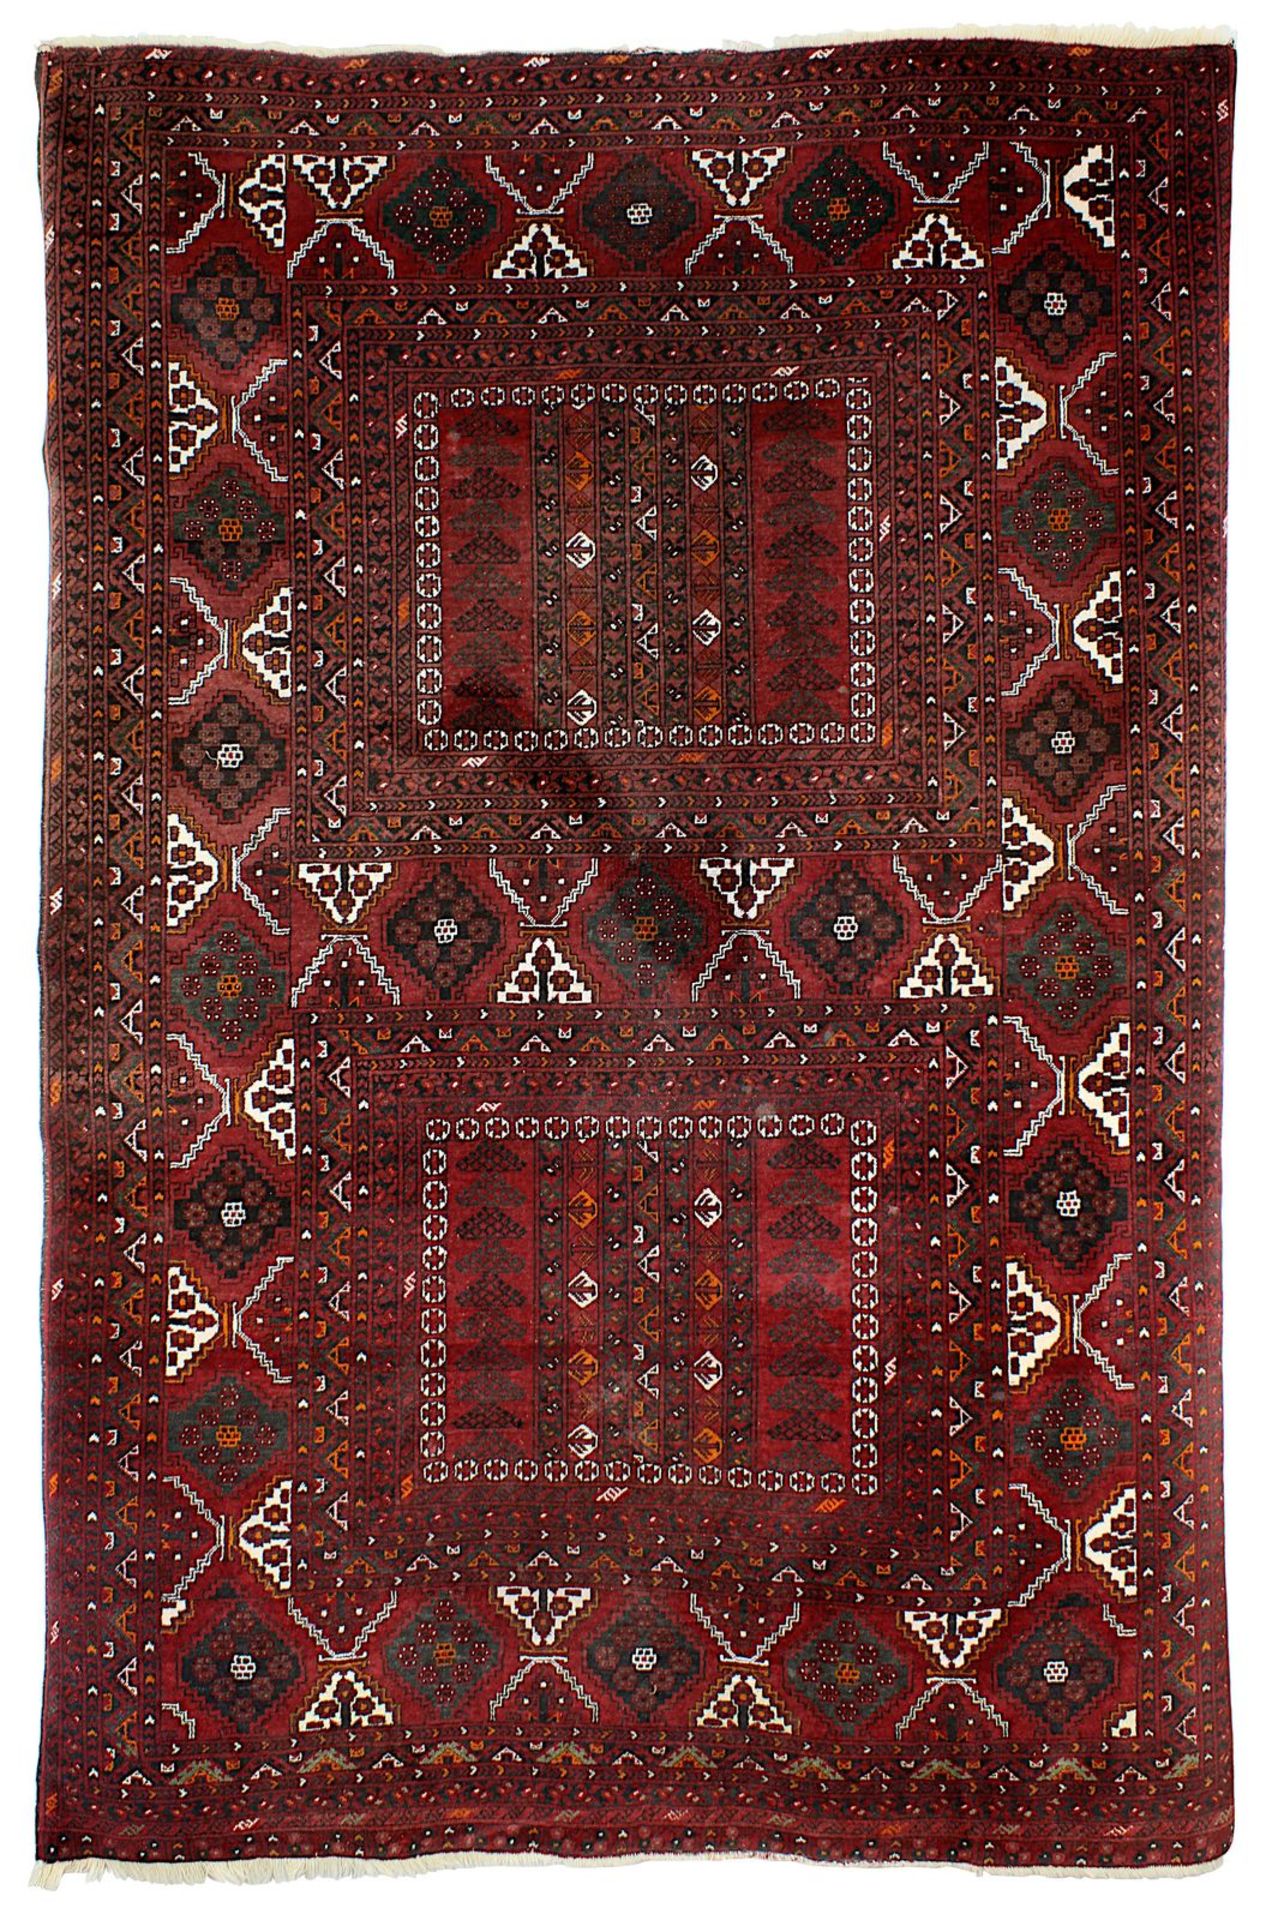 Teppich, Afghanistan 1. H. bis M. 20. Jh., Wolle auf Wolle, rot u. braun grundig, mit